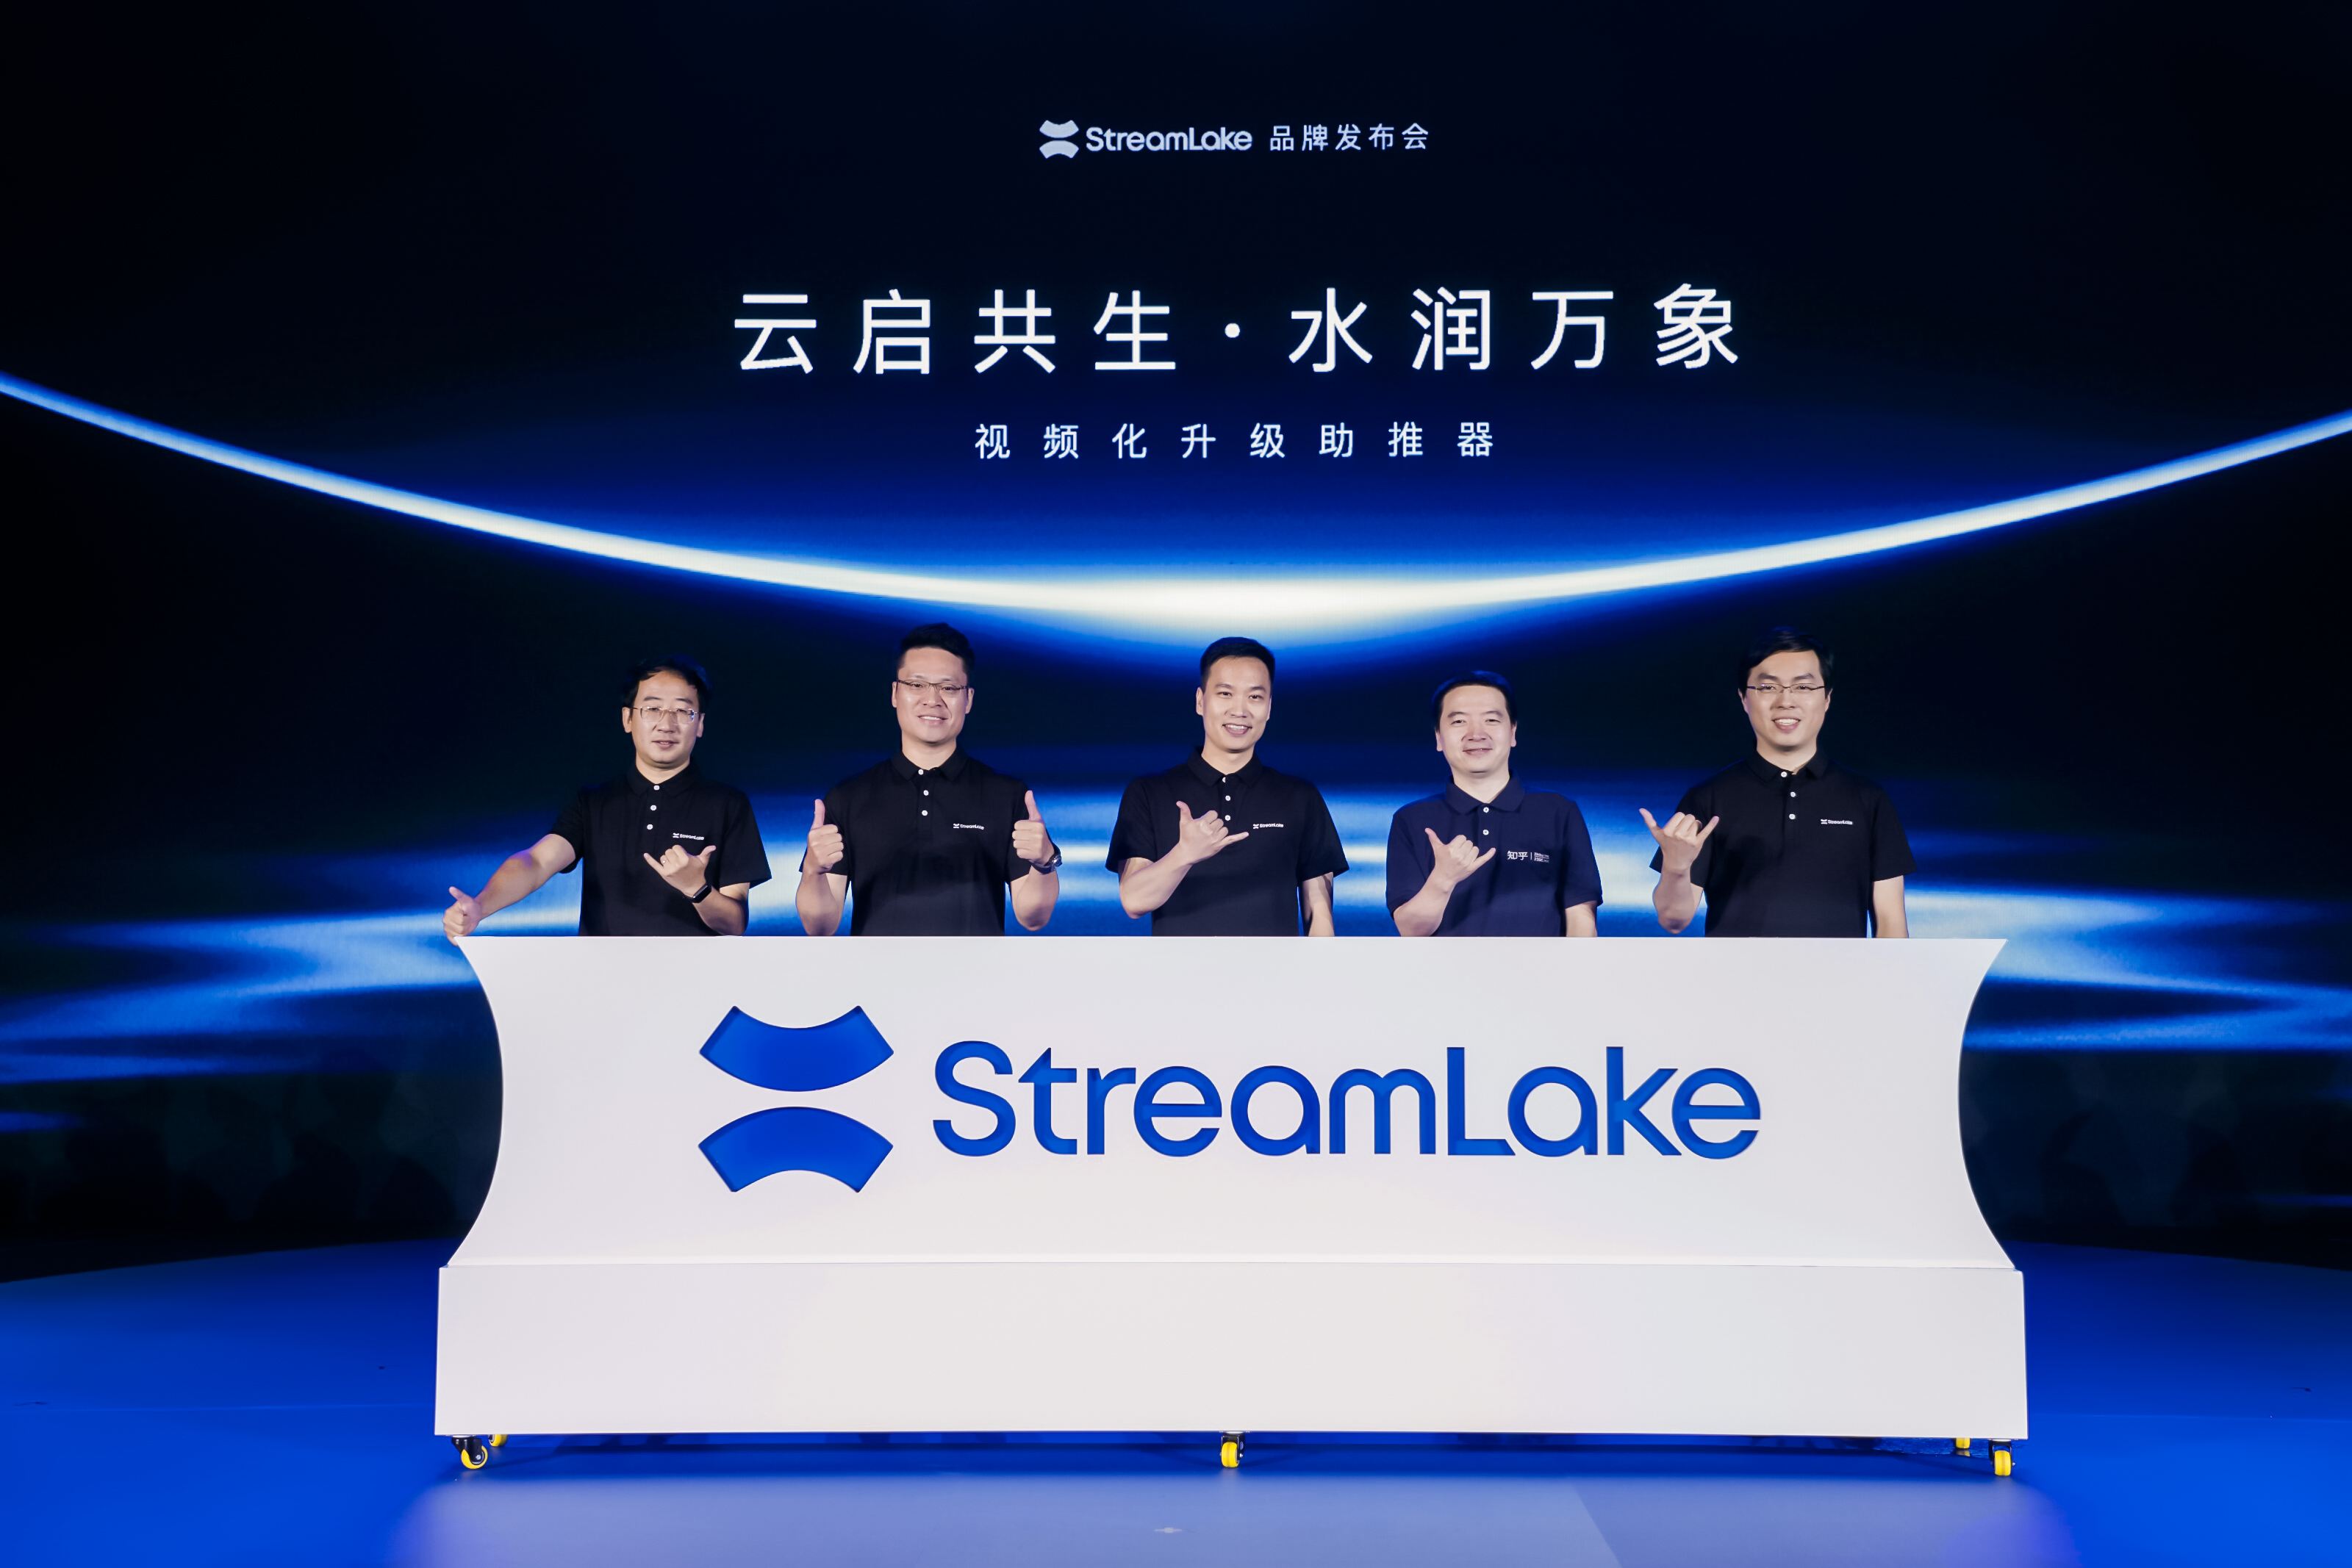 快手发布视频云品牌StreamLake，正式进军toB市场